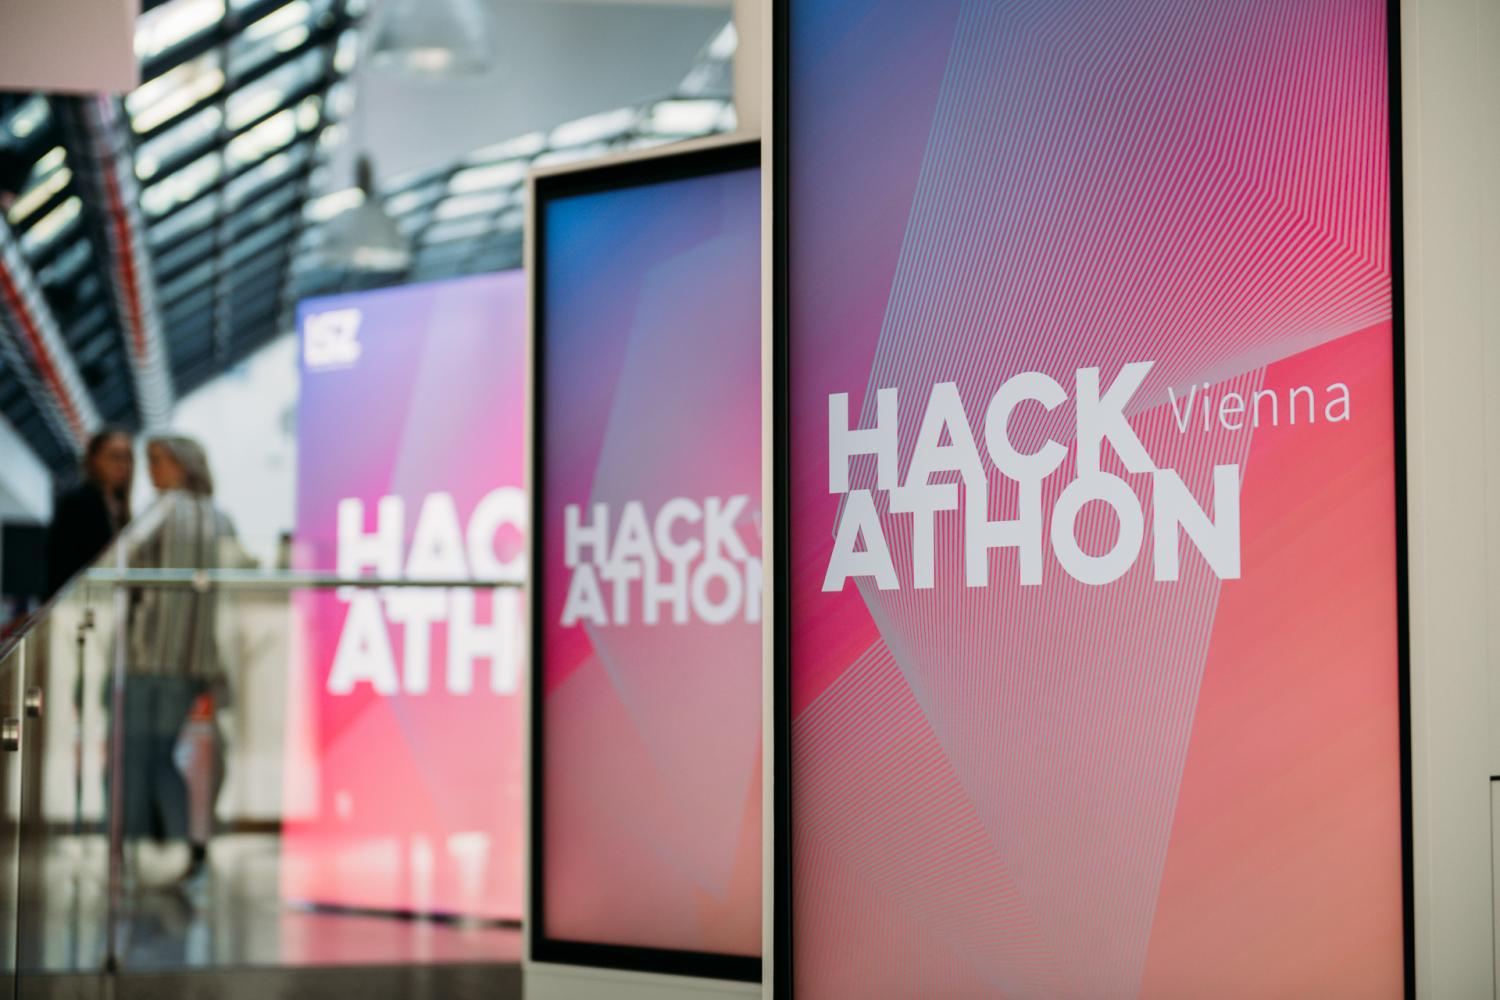 Hackathon Vienna